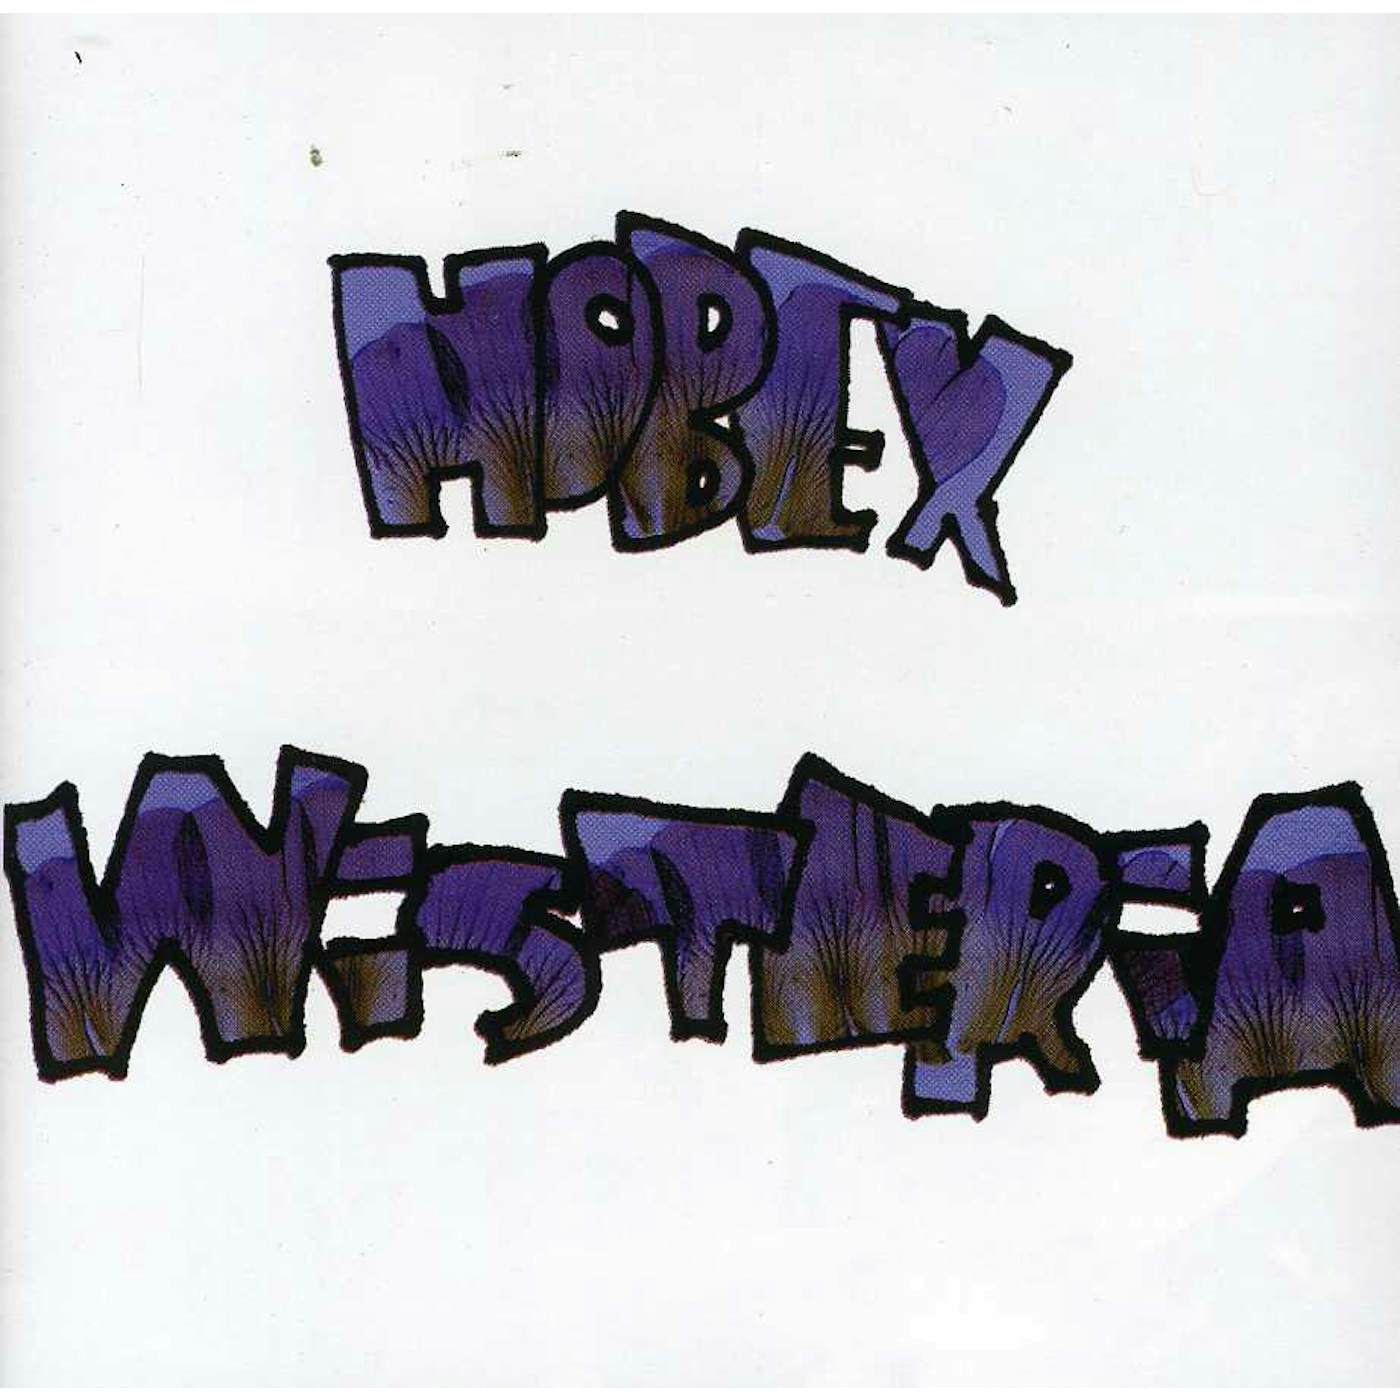 Hobex WISTERIA CD